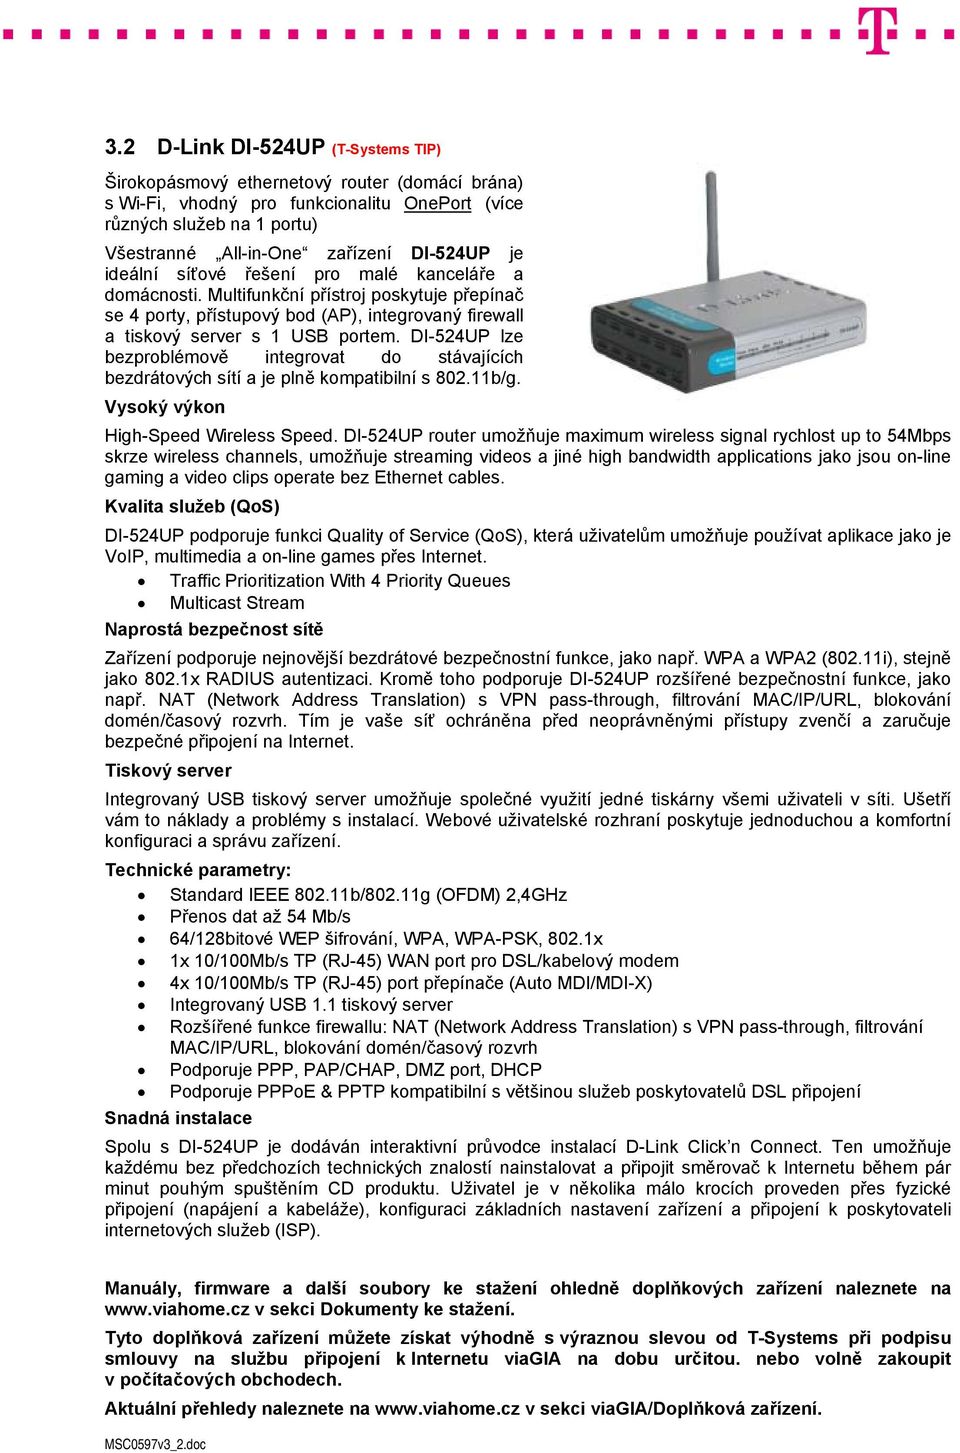 DI-524UP lze bezproblémově integrovat do stávajících bezdrátových sítí a je plně kompatibilní s 802.11b/g. Vysoký výkon High-Speed Wireless Speed.